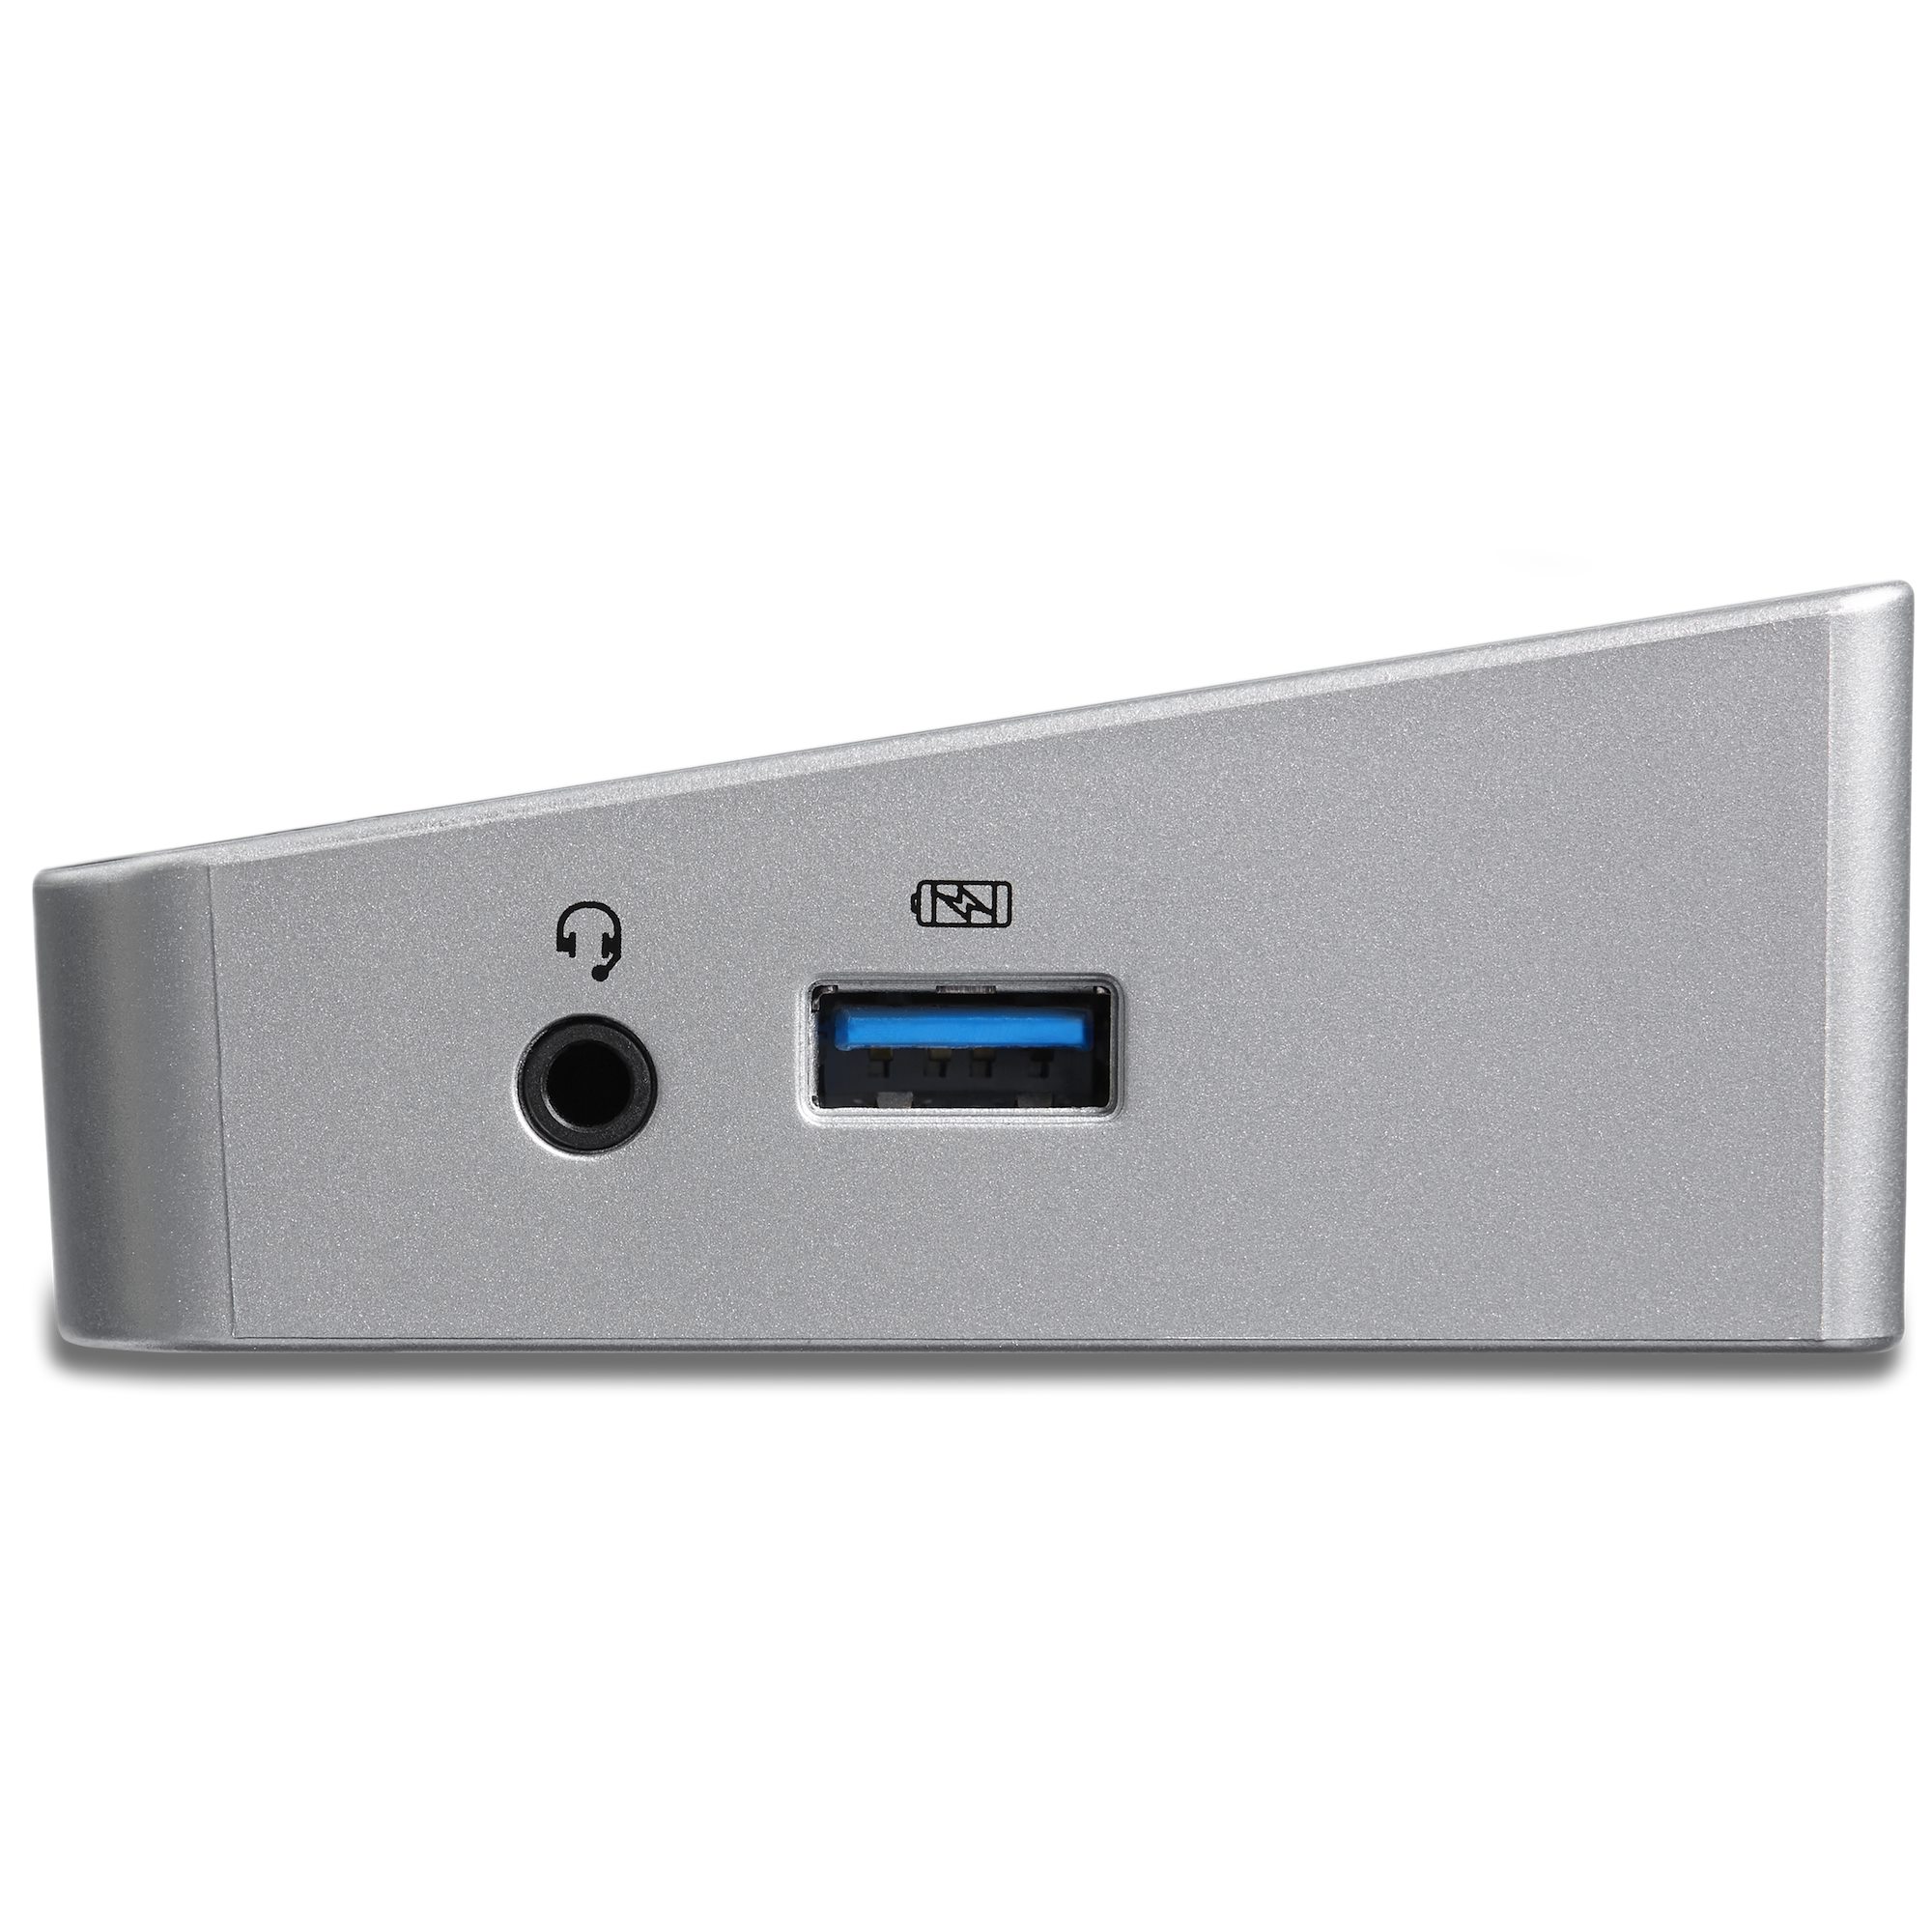 StarTech.com Docking Station USB 3.0 para 2 Monitores HDMI y DisplayPort 4K  - USB 3.0 a 4x USB-A, Ethernet, HDMI y DP - Replicador de Puertos Universal  para Laptop Mac/Win, 31 in